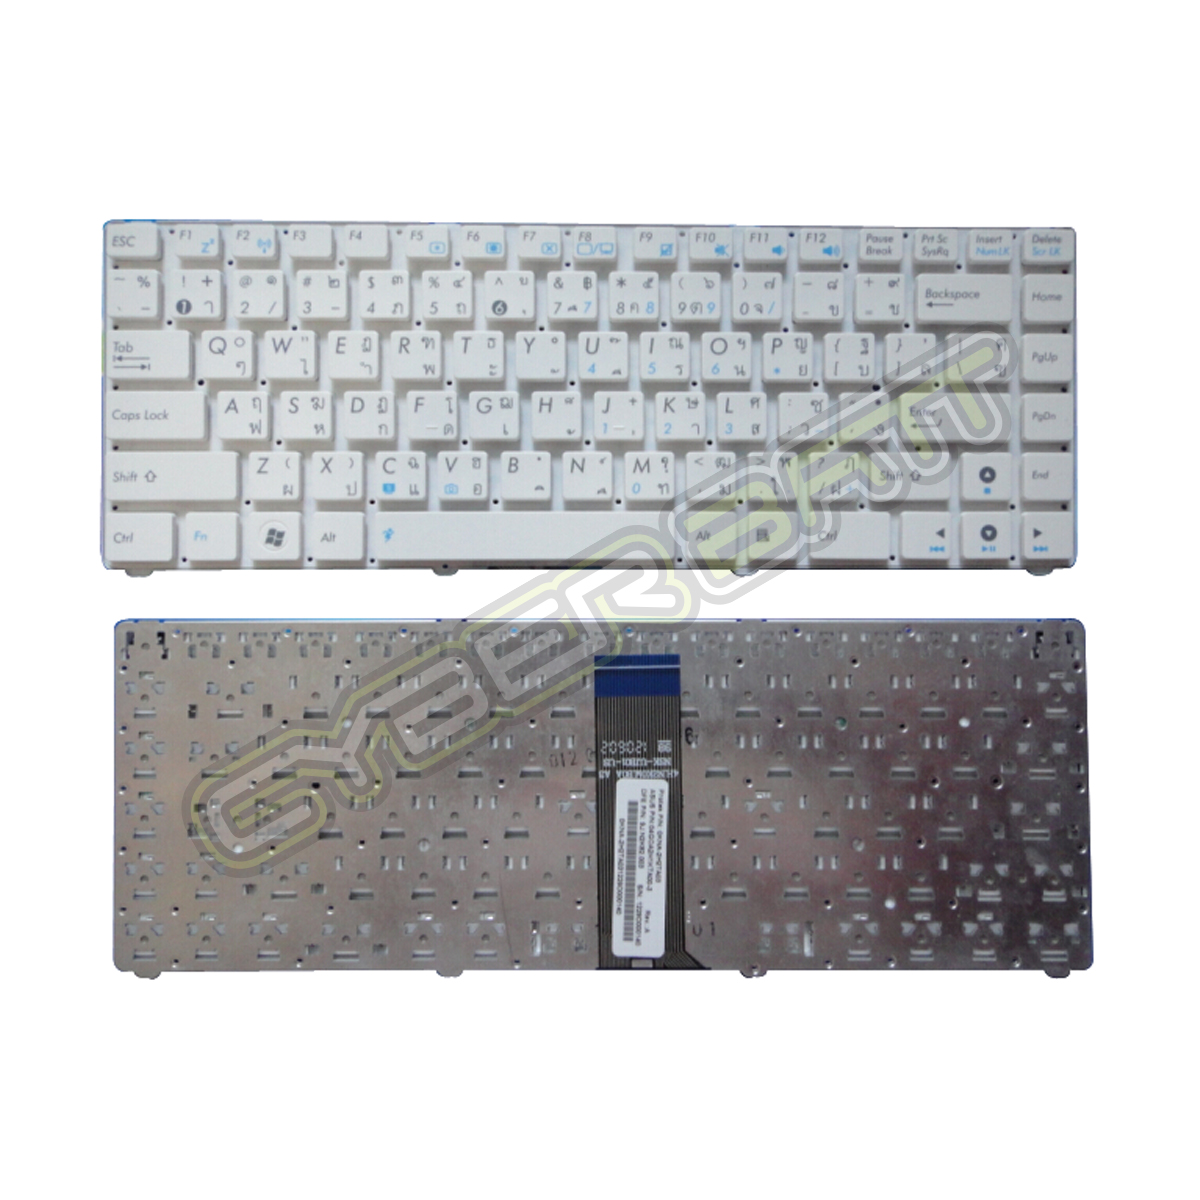 Keyboard Asus Eee PC 1215B Series White TH